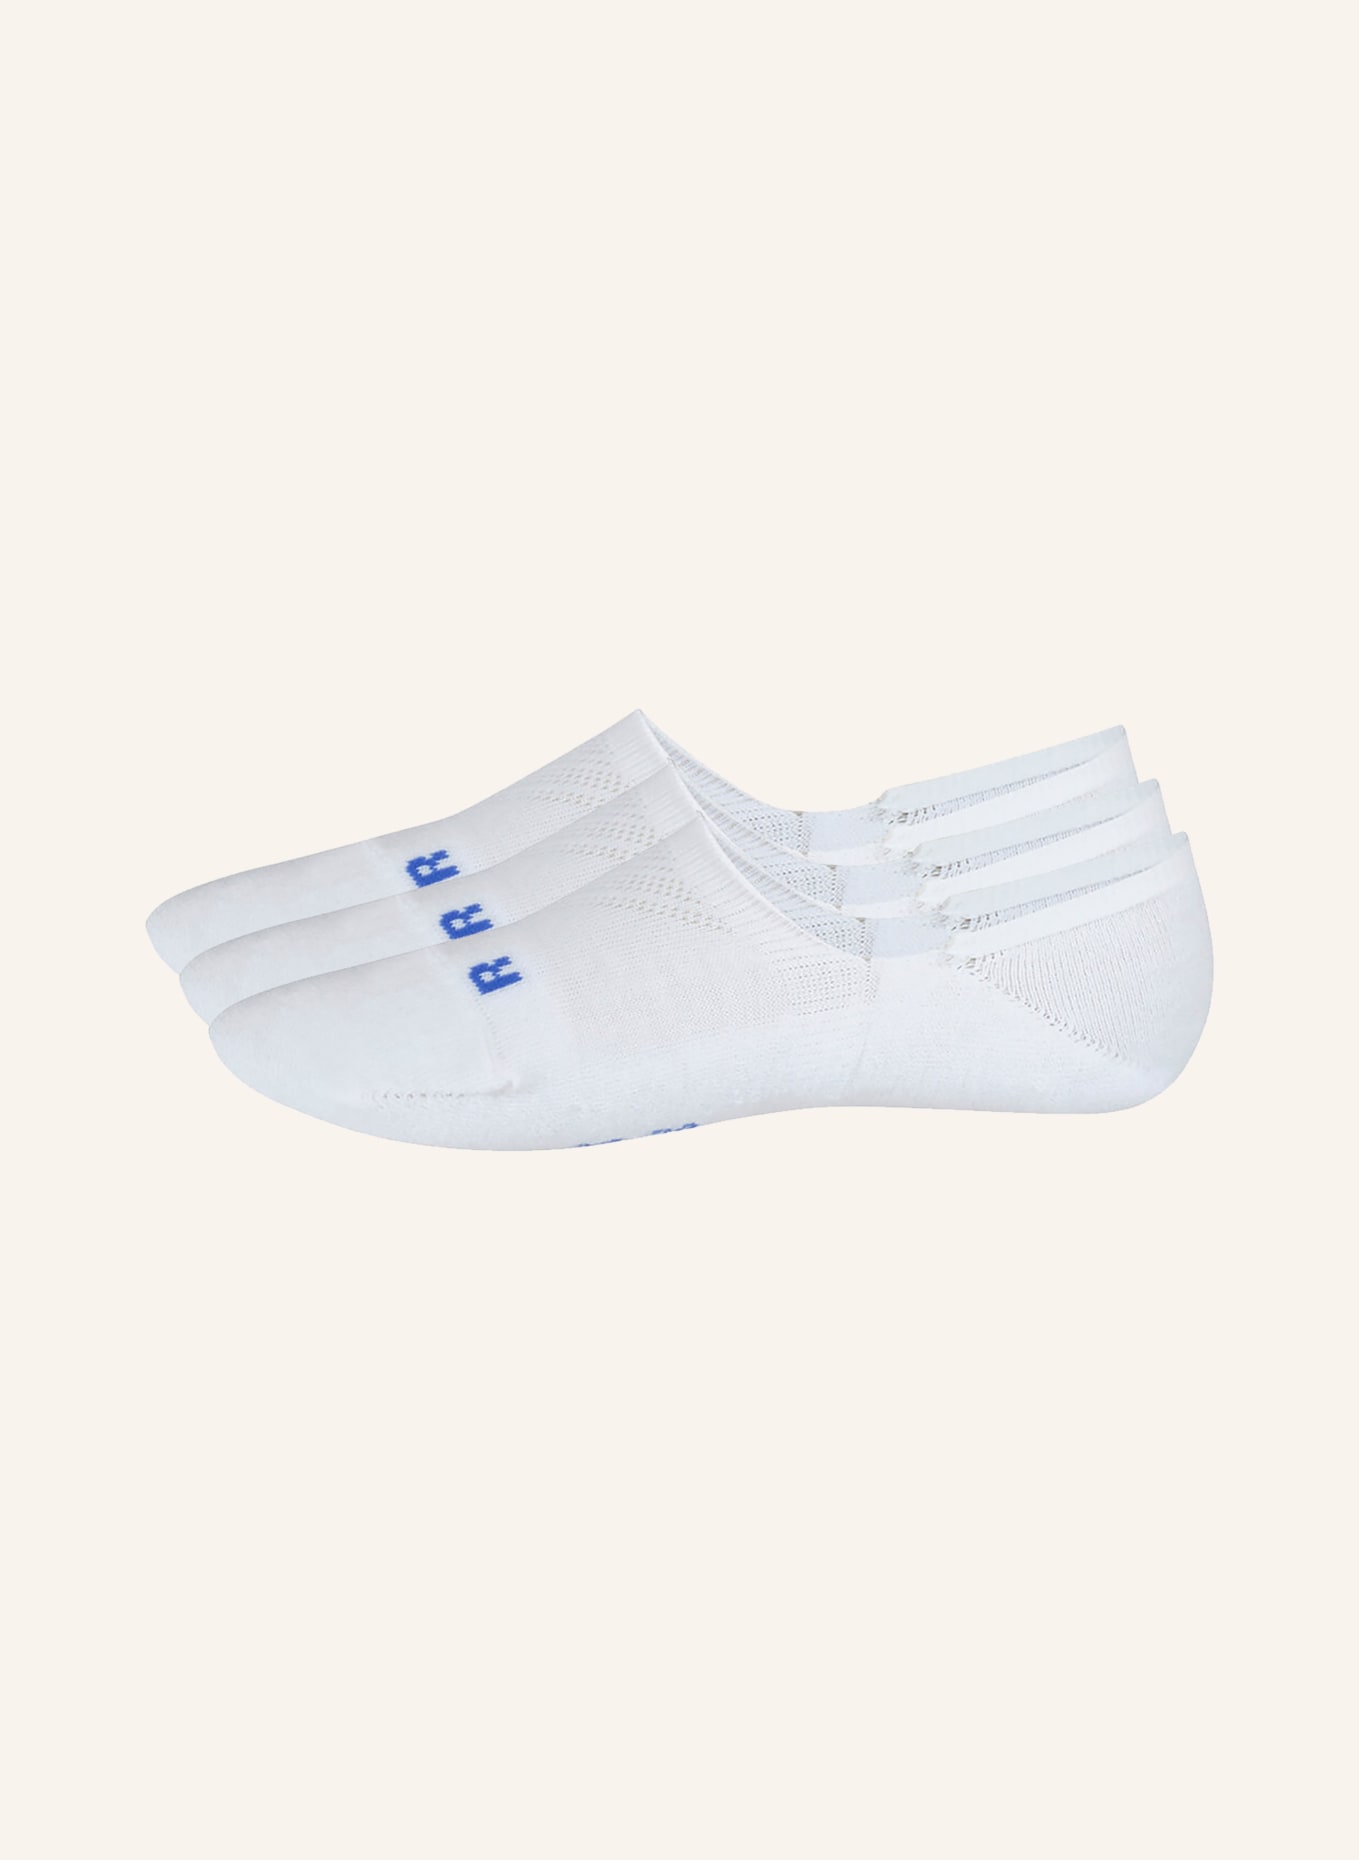 FALKE 3-pack sneaker socks COOL KICK, Color: 2000 WHITE (Image 1)